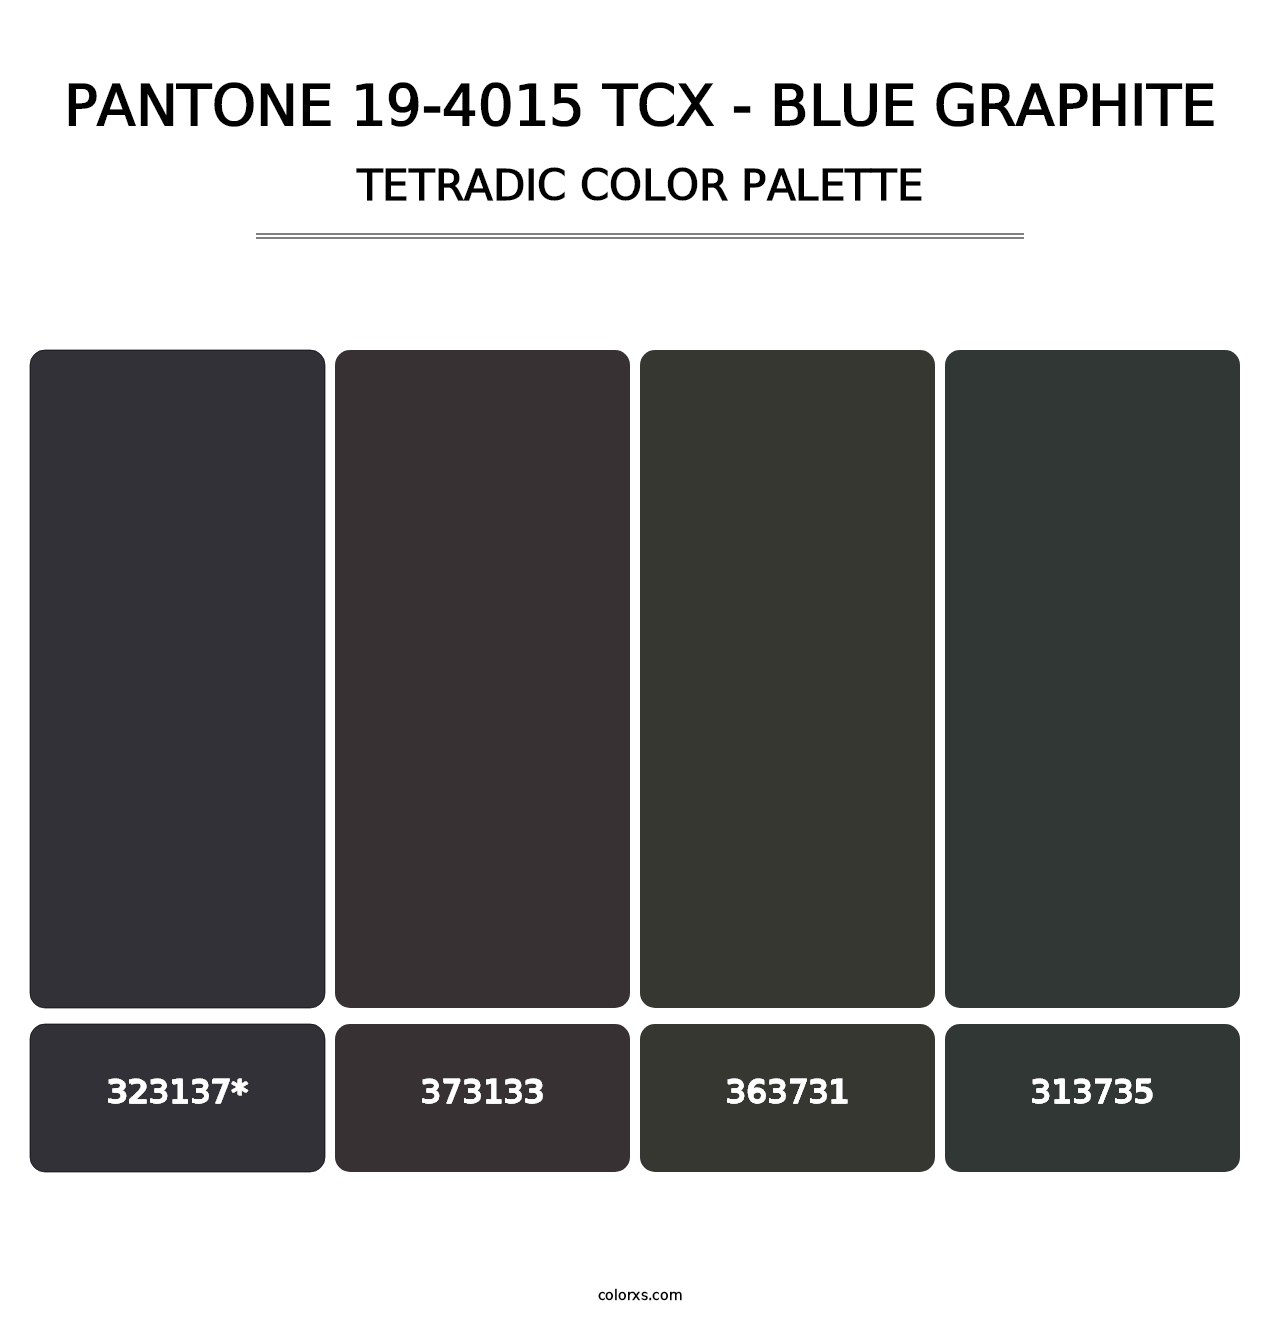 PANTONE 19-4015 TCX - Blue Graphite - Tetradic Color Palette